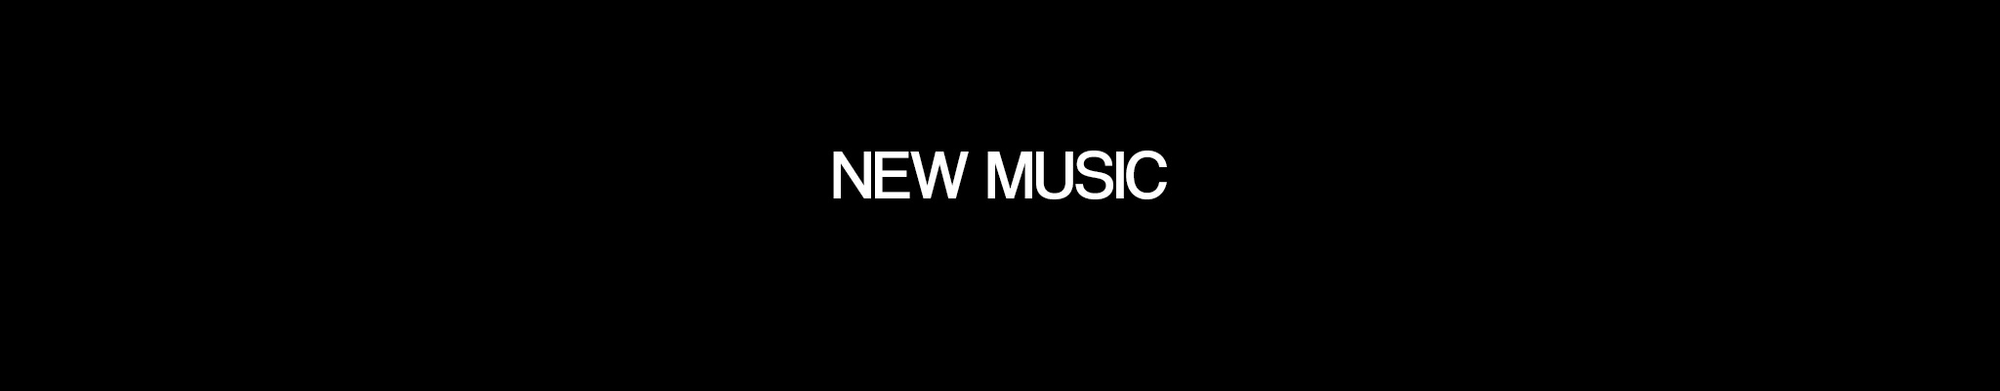 MUSIC - NEW